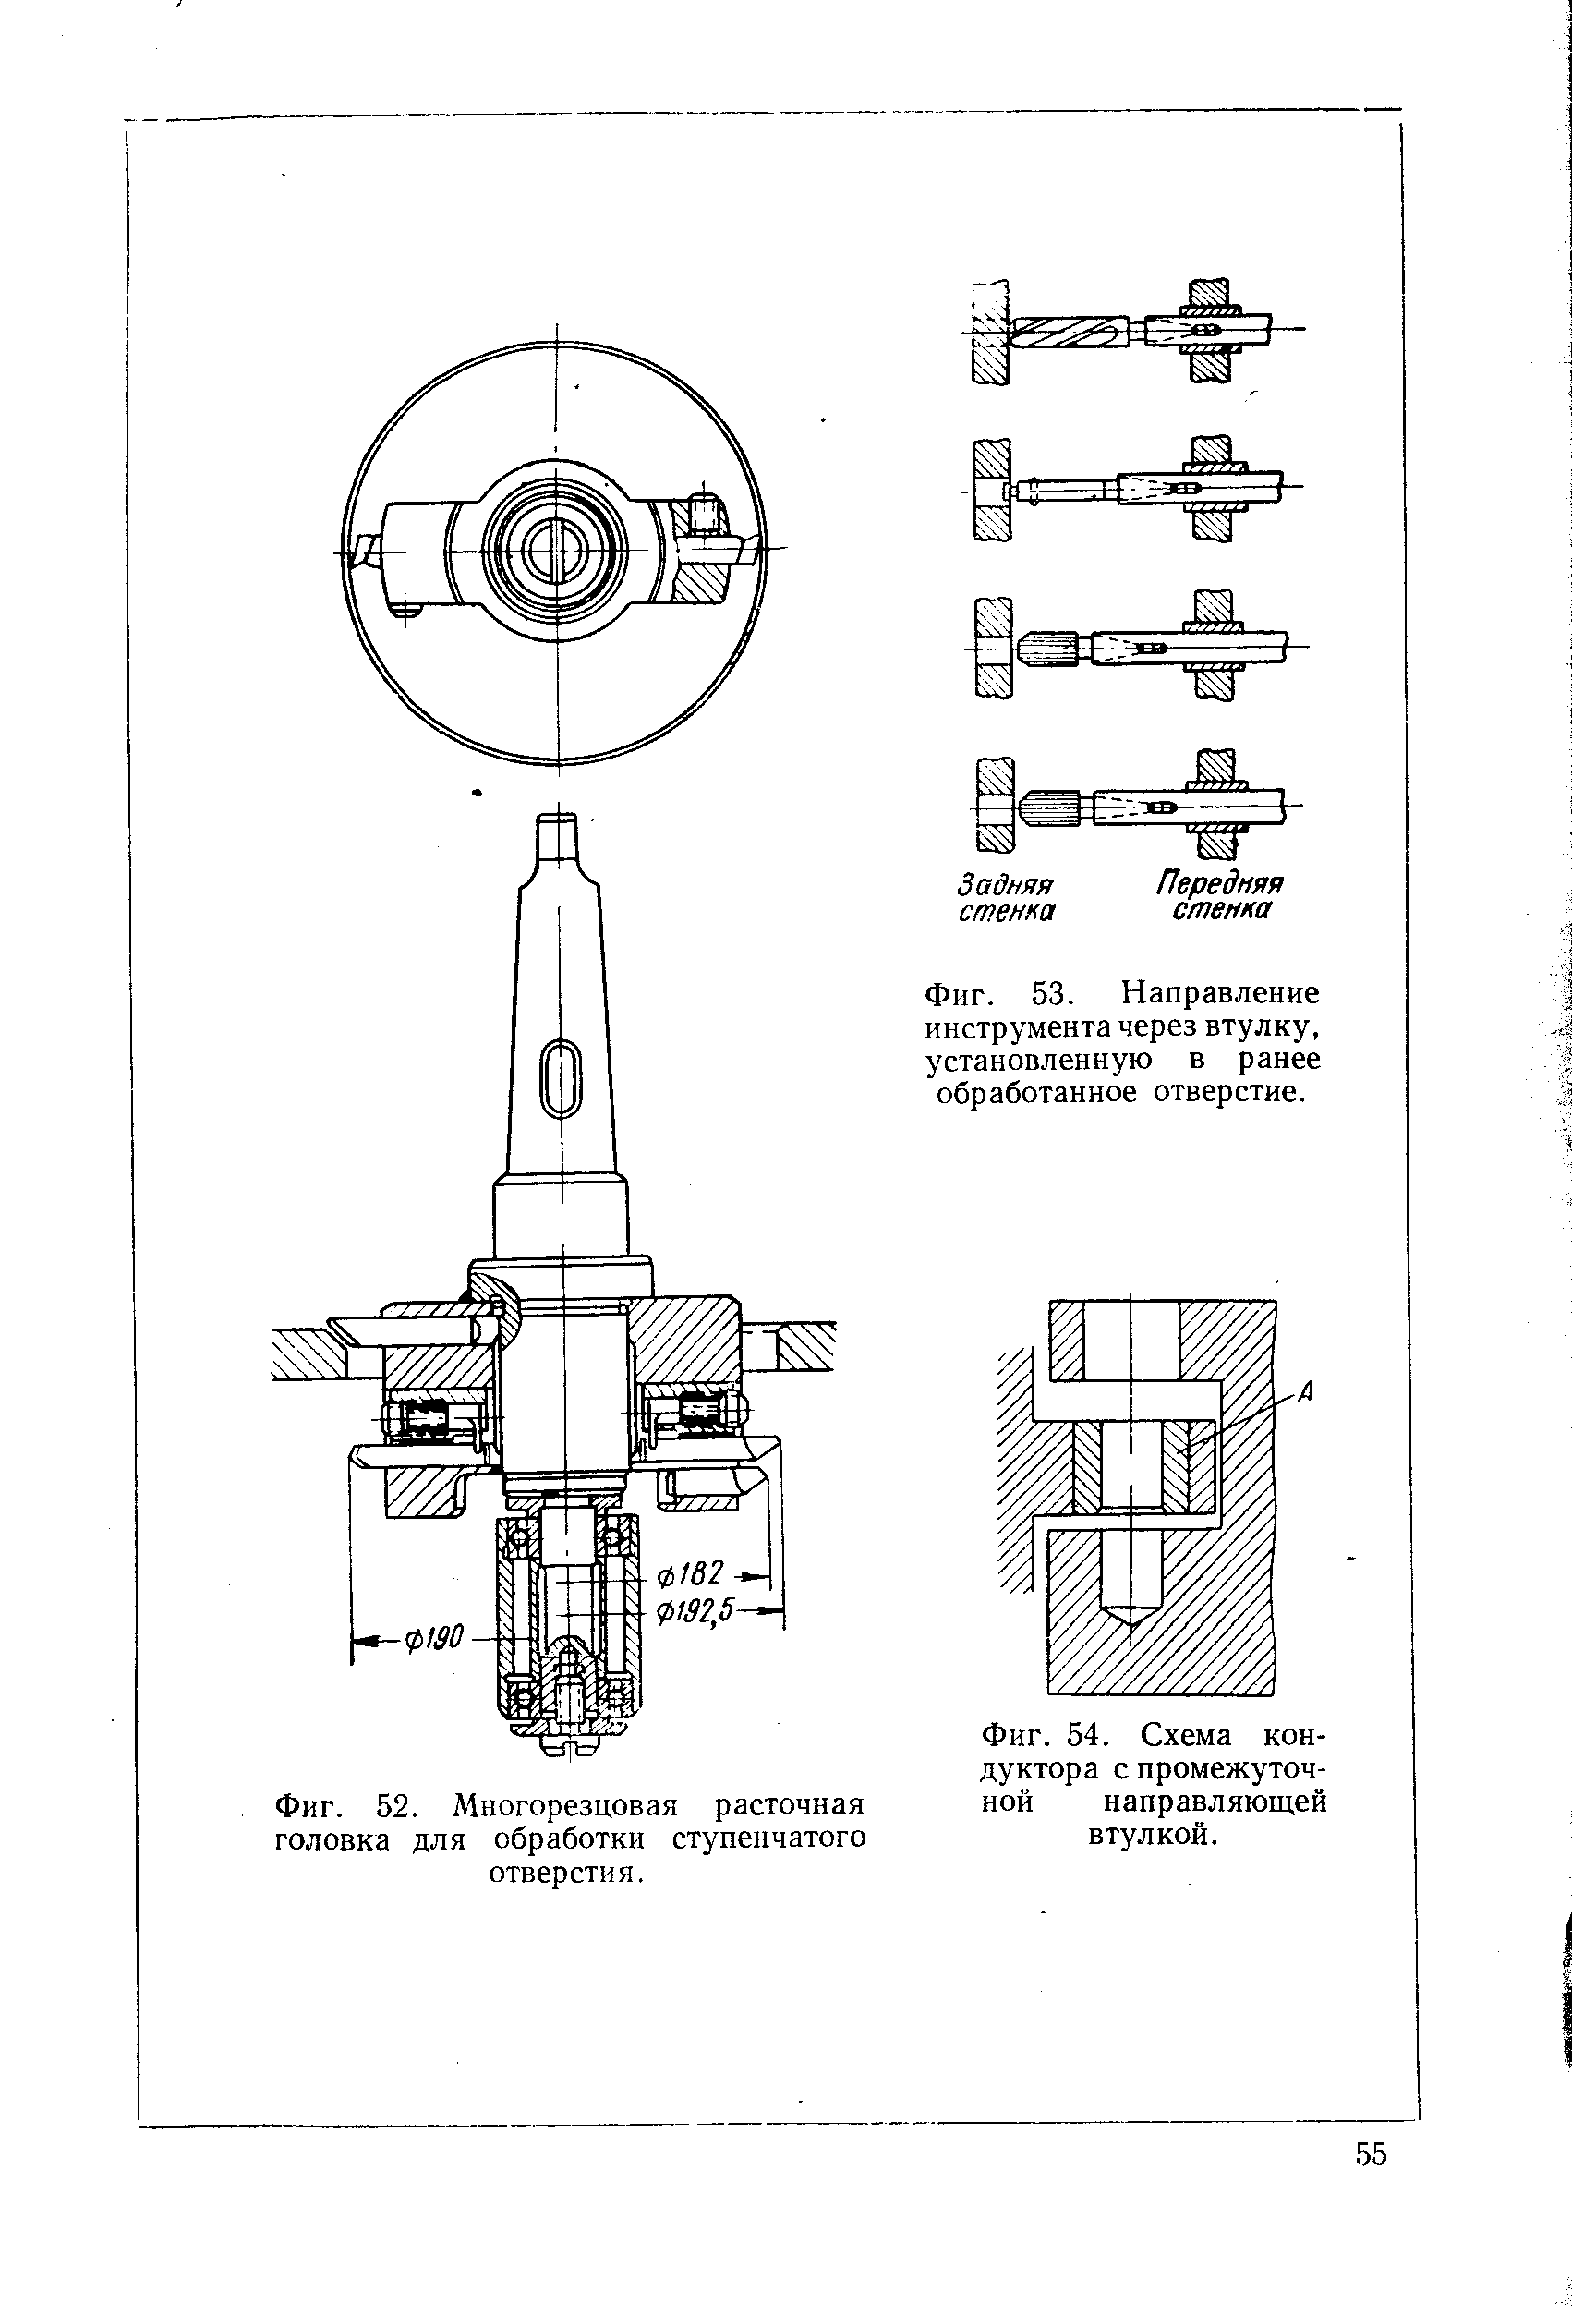 Фиг. 54. Схема кондуктора с промежуточной направляющей втулкой.
